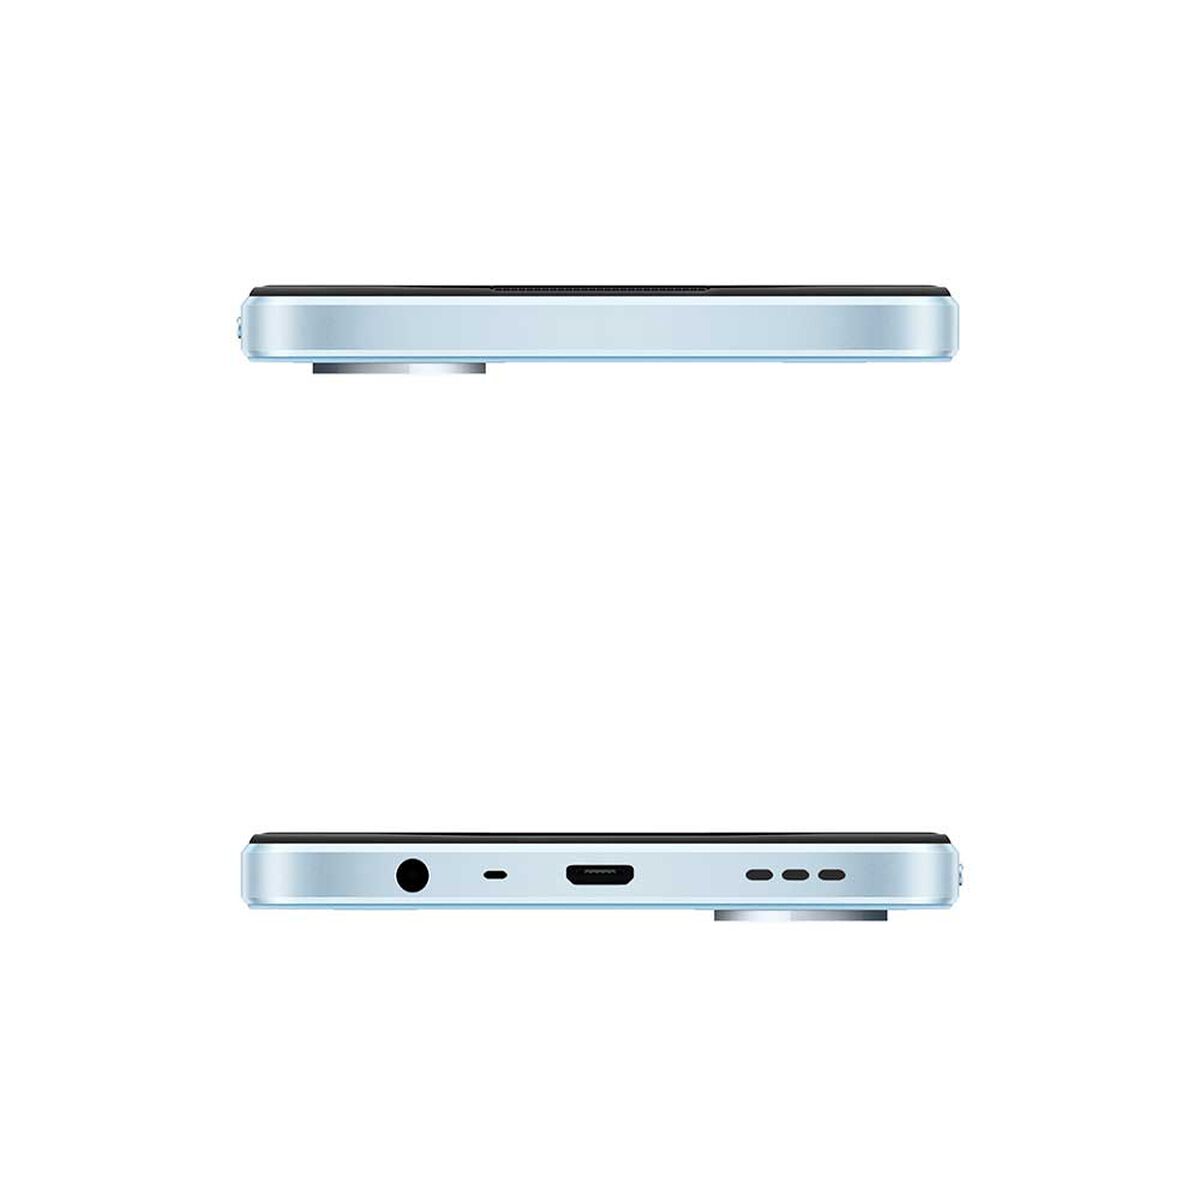 Celular Oppo A17 64GB 6,56" Azul Liberado